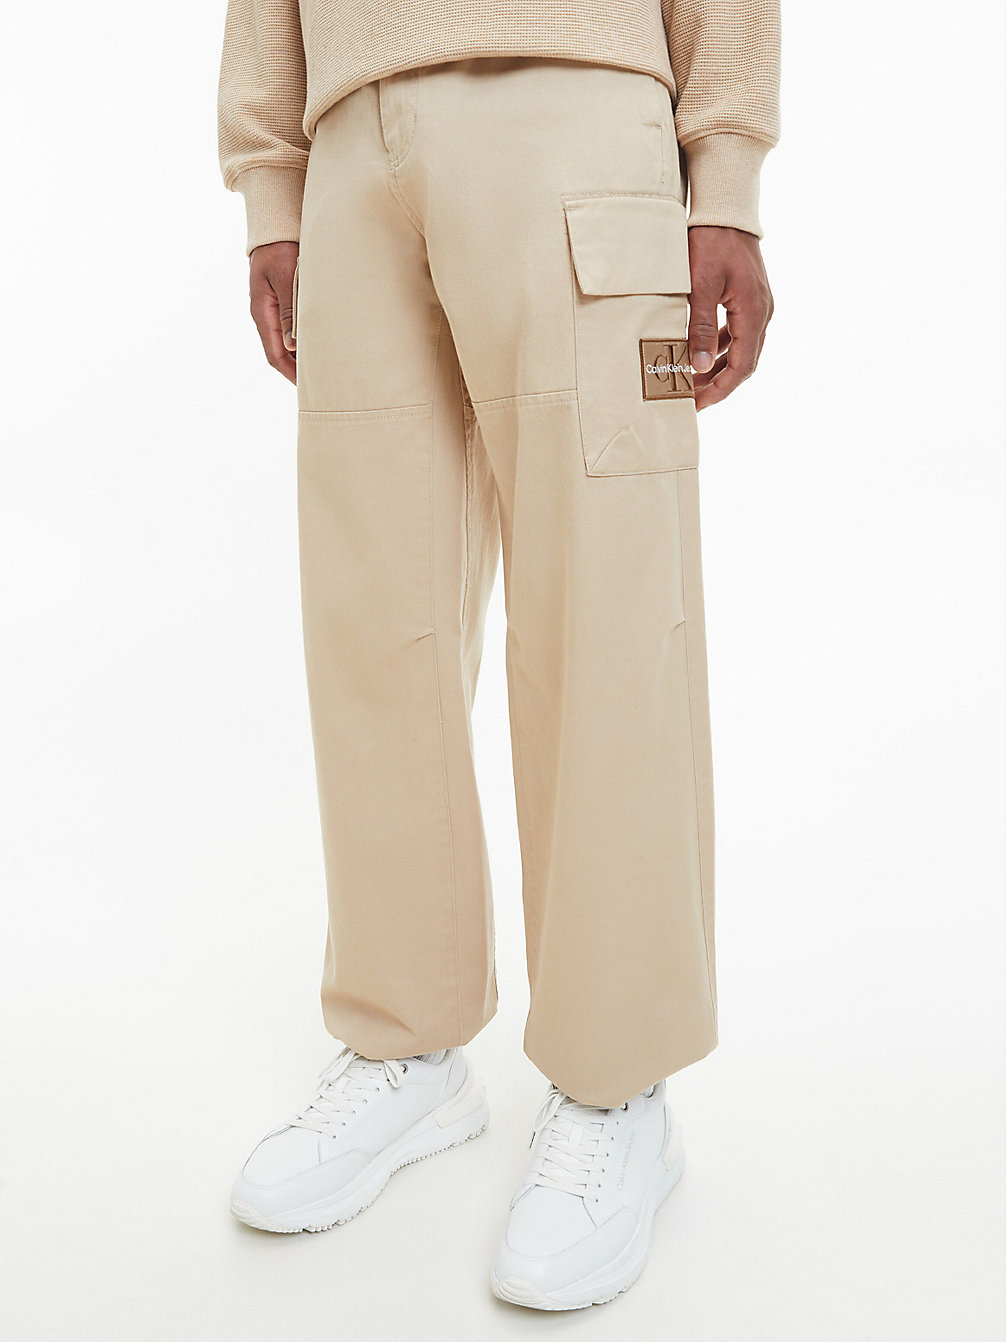 TRAVERTINE Pantalon Cargo Jambes Larges undefined hommes Calvin Klein